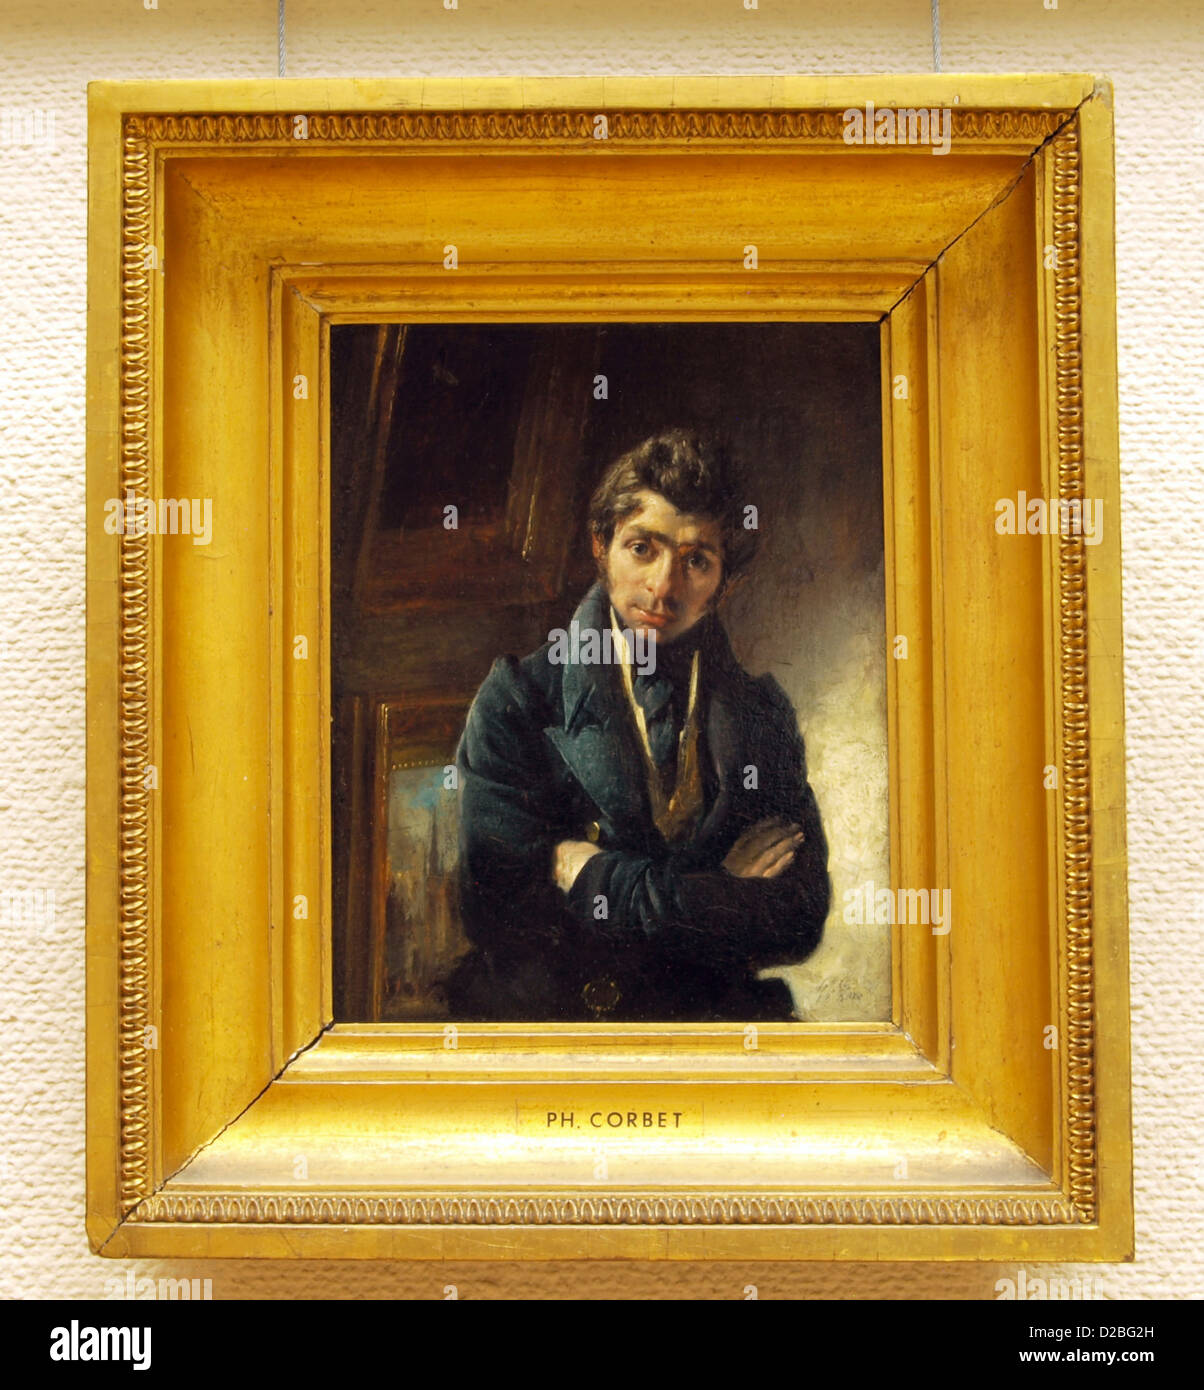 Philip Corbet, Mansportret, 1830, Olieverf op paneel Stock Photo